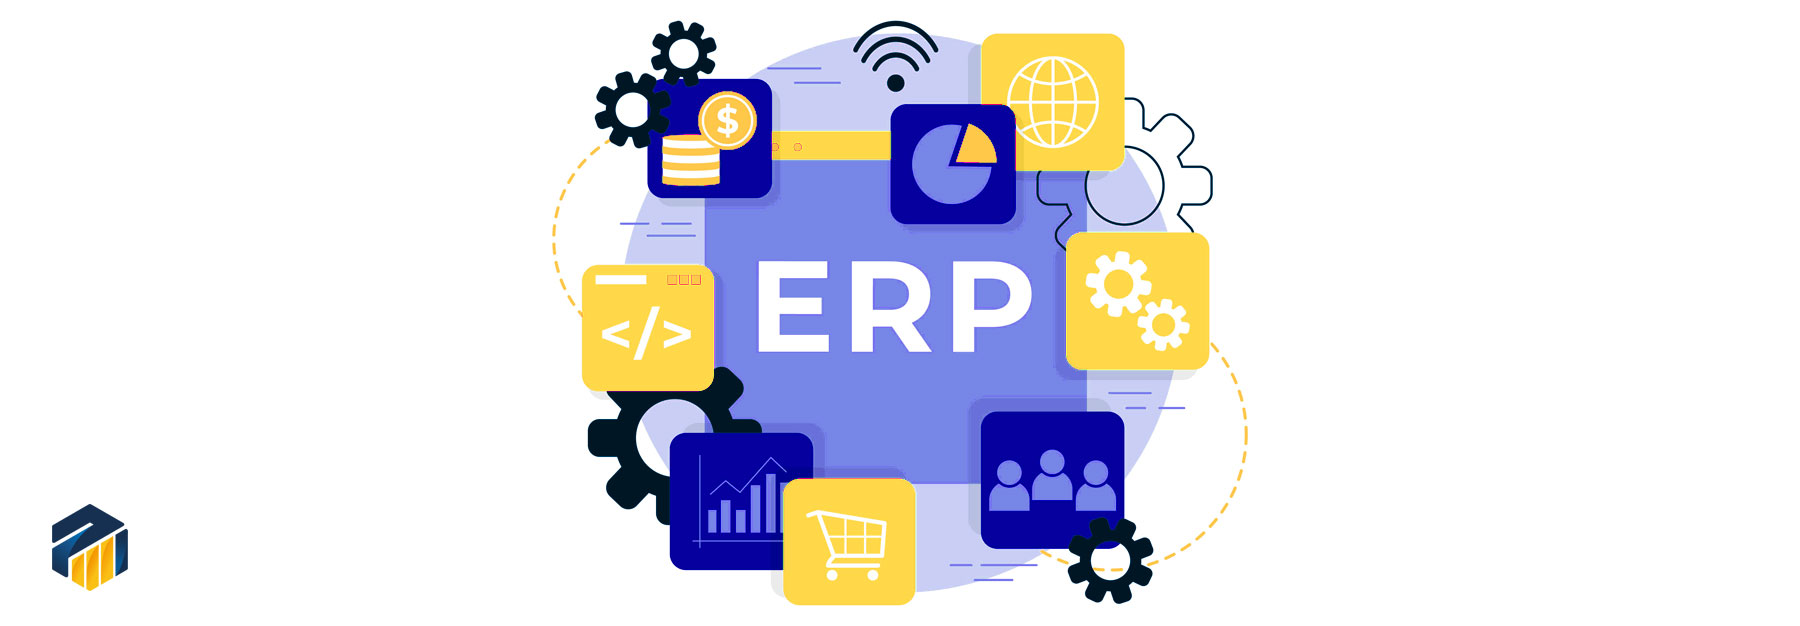 همه چیز درباره ERP | همه چیز در مورد erp | Erp مخفف چیست | Erp ایرانی | نرم افزار های erp